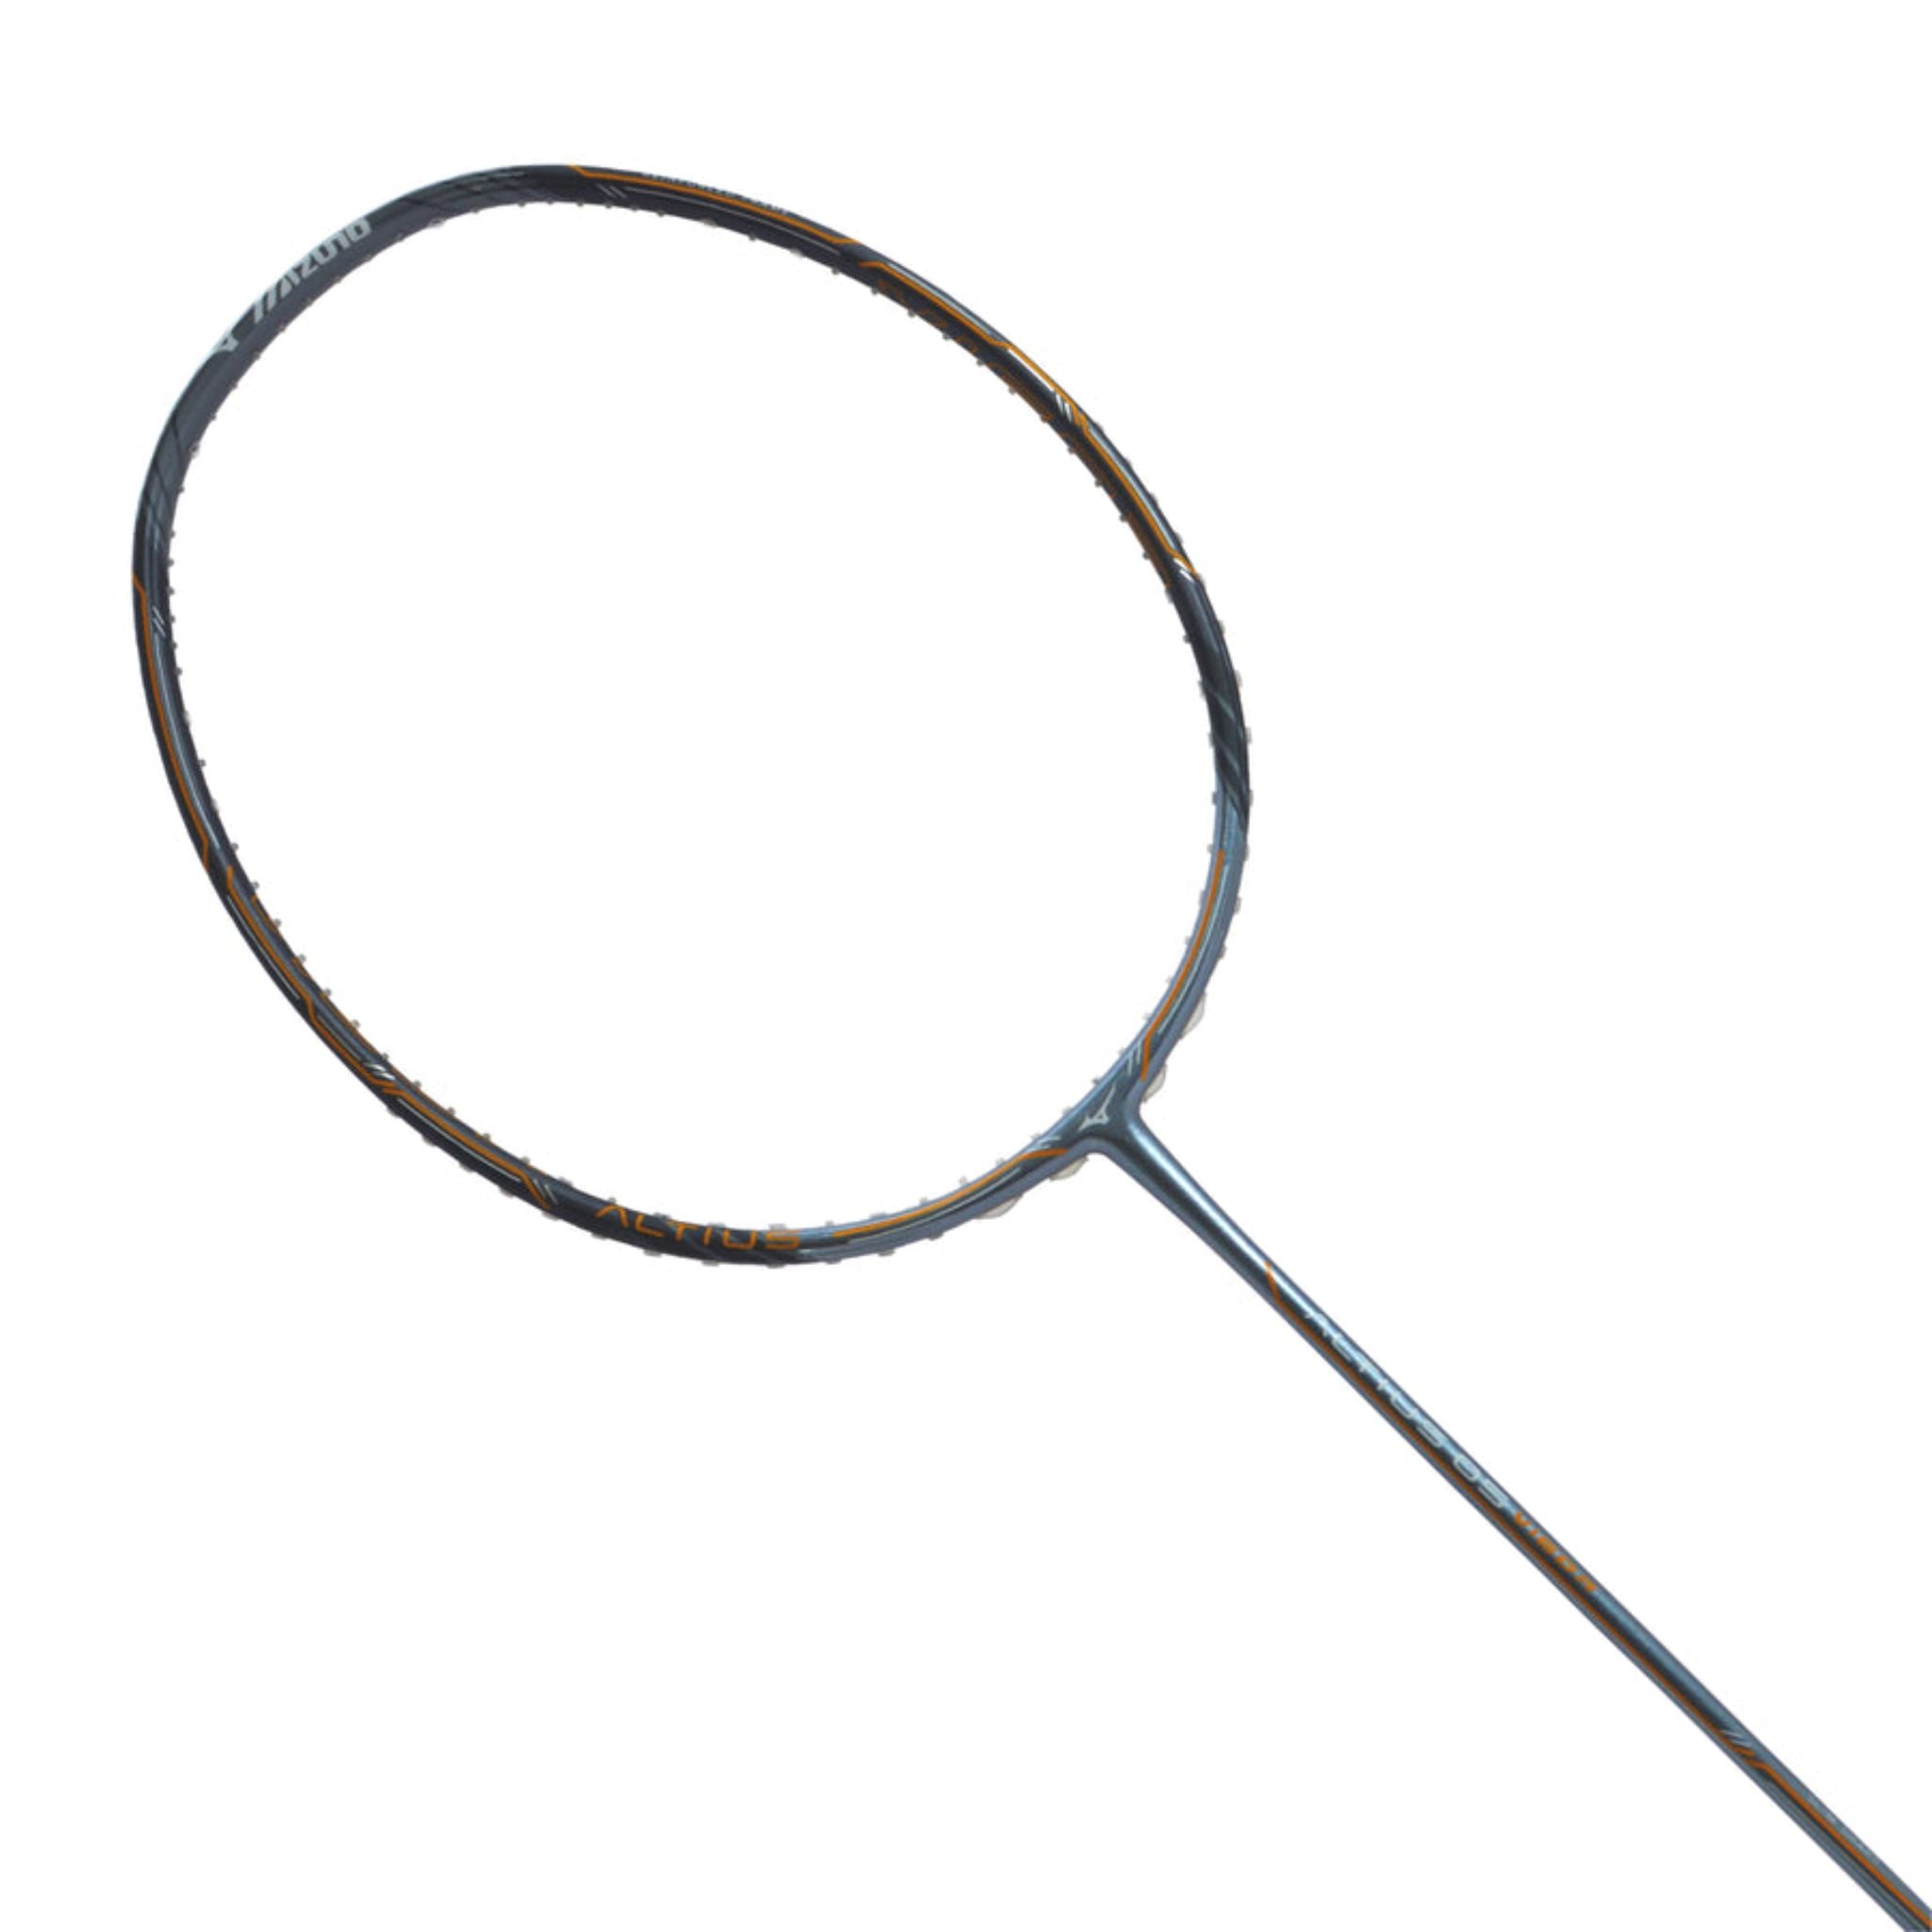 Mizuno Altius 05 Vigor Badminton Racket - TriplePointSports